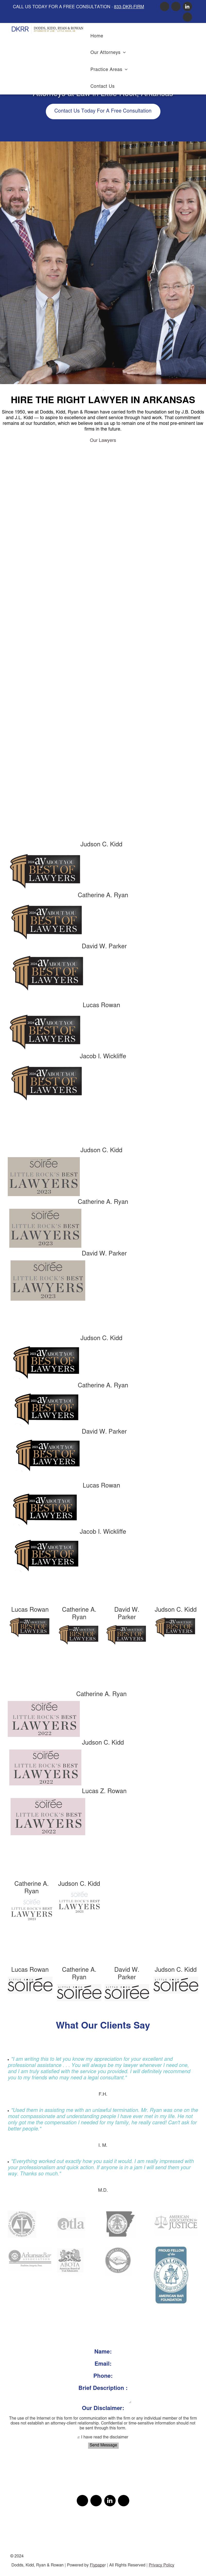 Dodds, Kidd & Ryan - Little Rock AR Lawyers